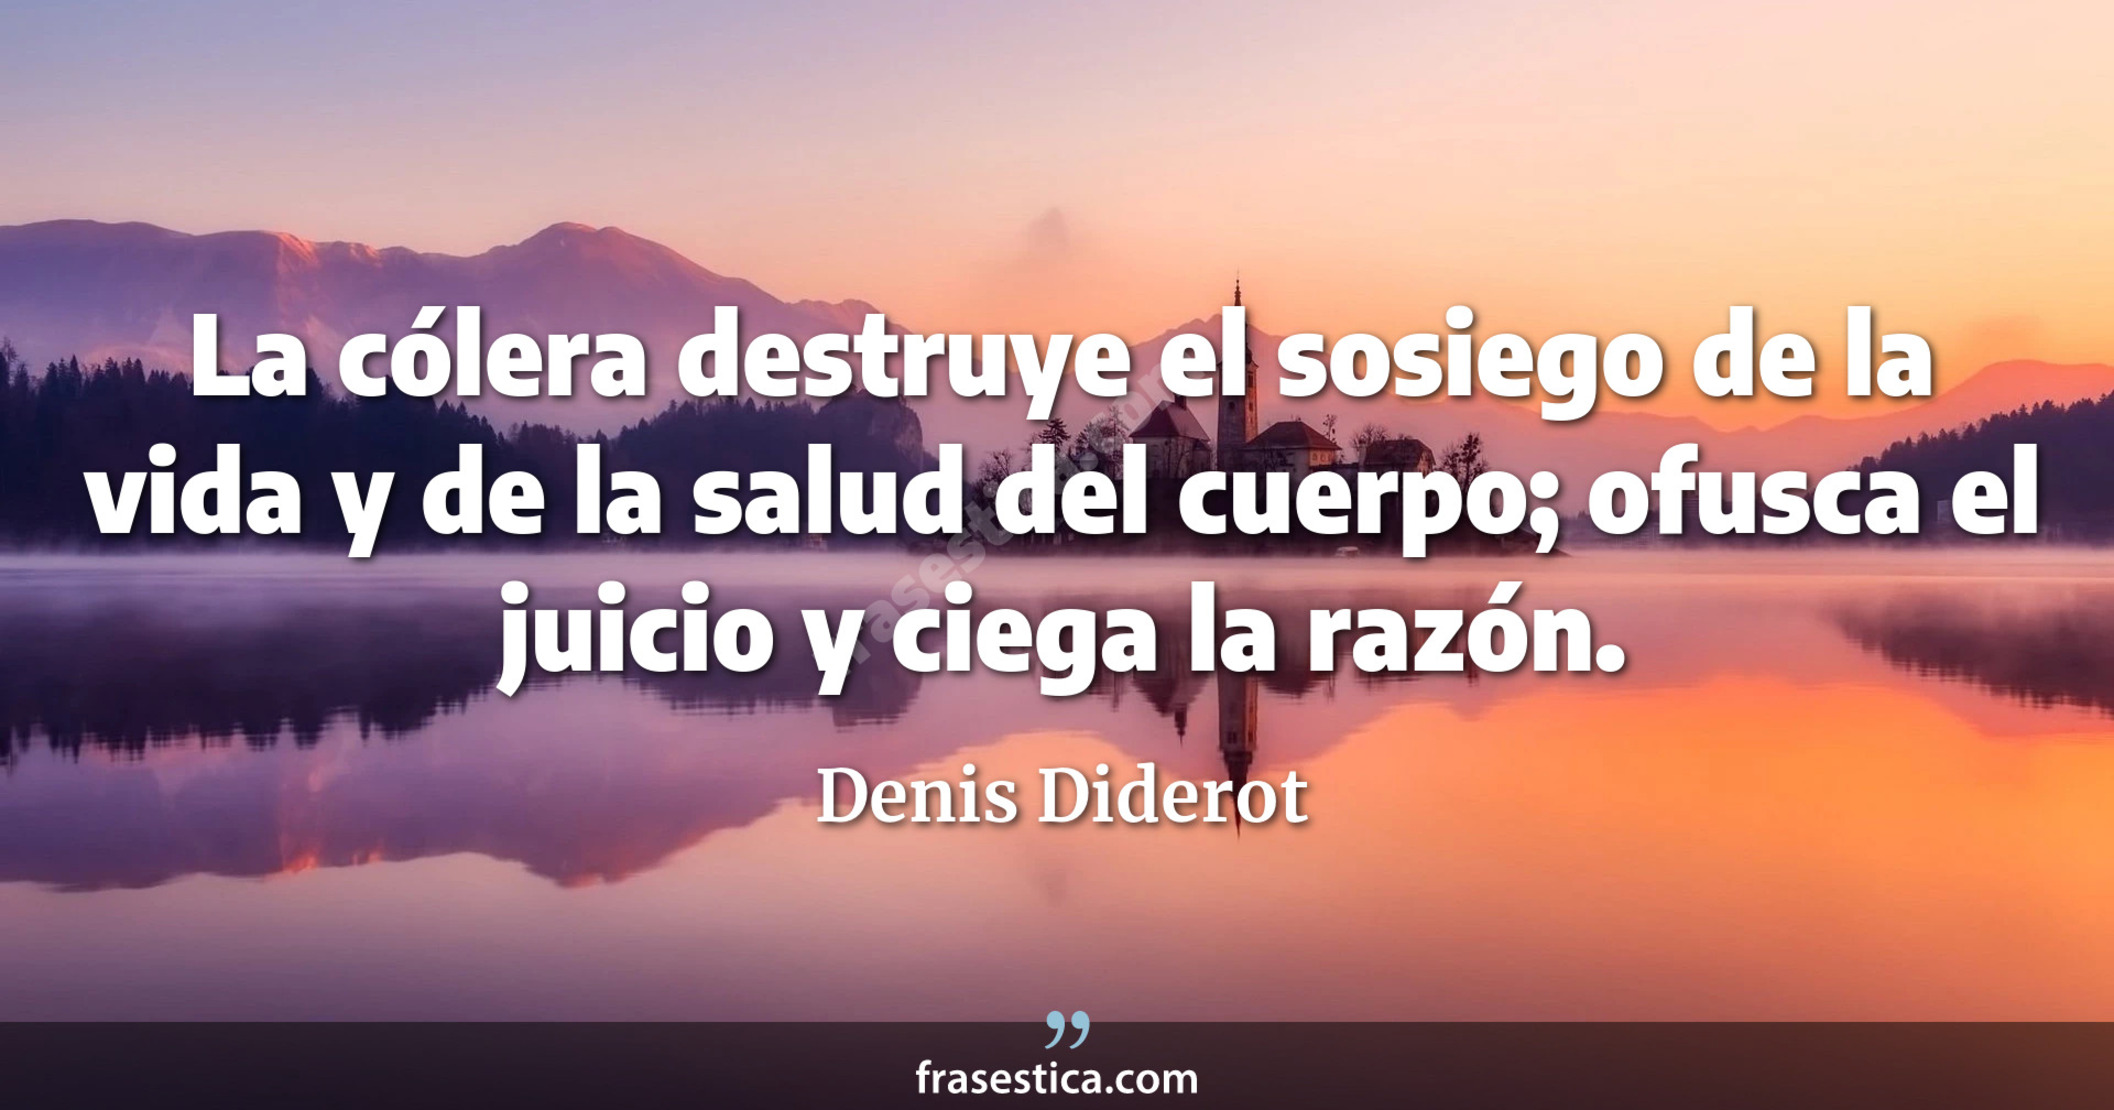 La cólera destruye el sosiego de la vida y de la salud del cuerpo; ofusca el juicio y ciega la razón. - Denis Diderot